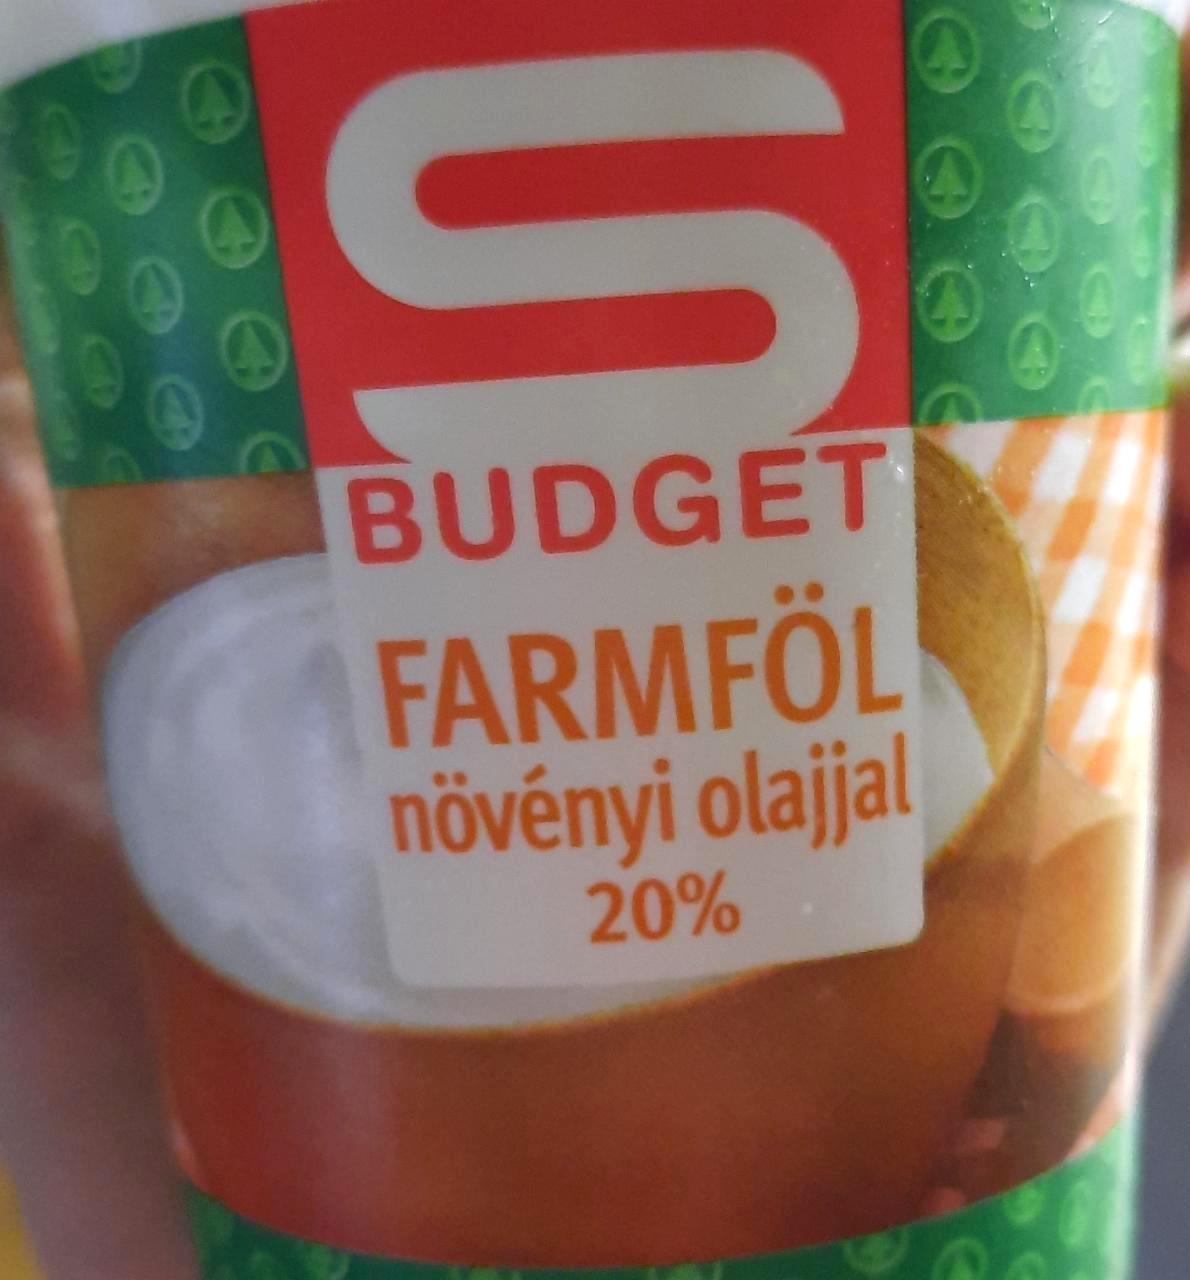 Képek - Farmföl növényi olajjal 20% S Budget